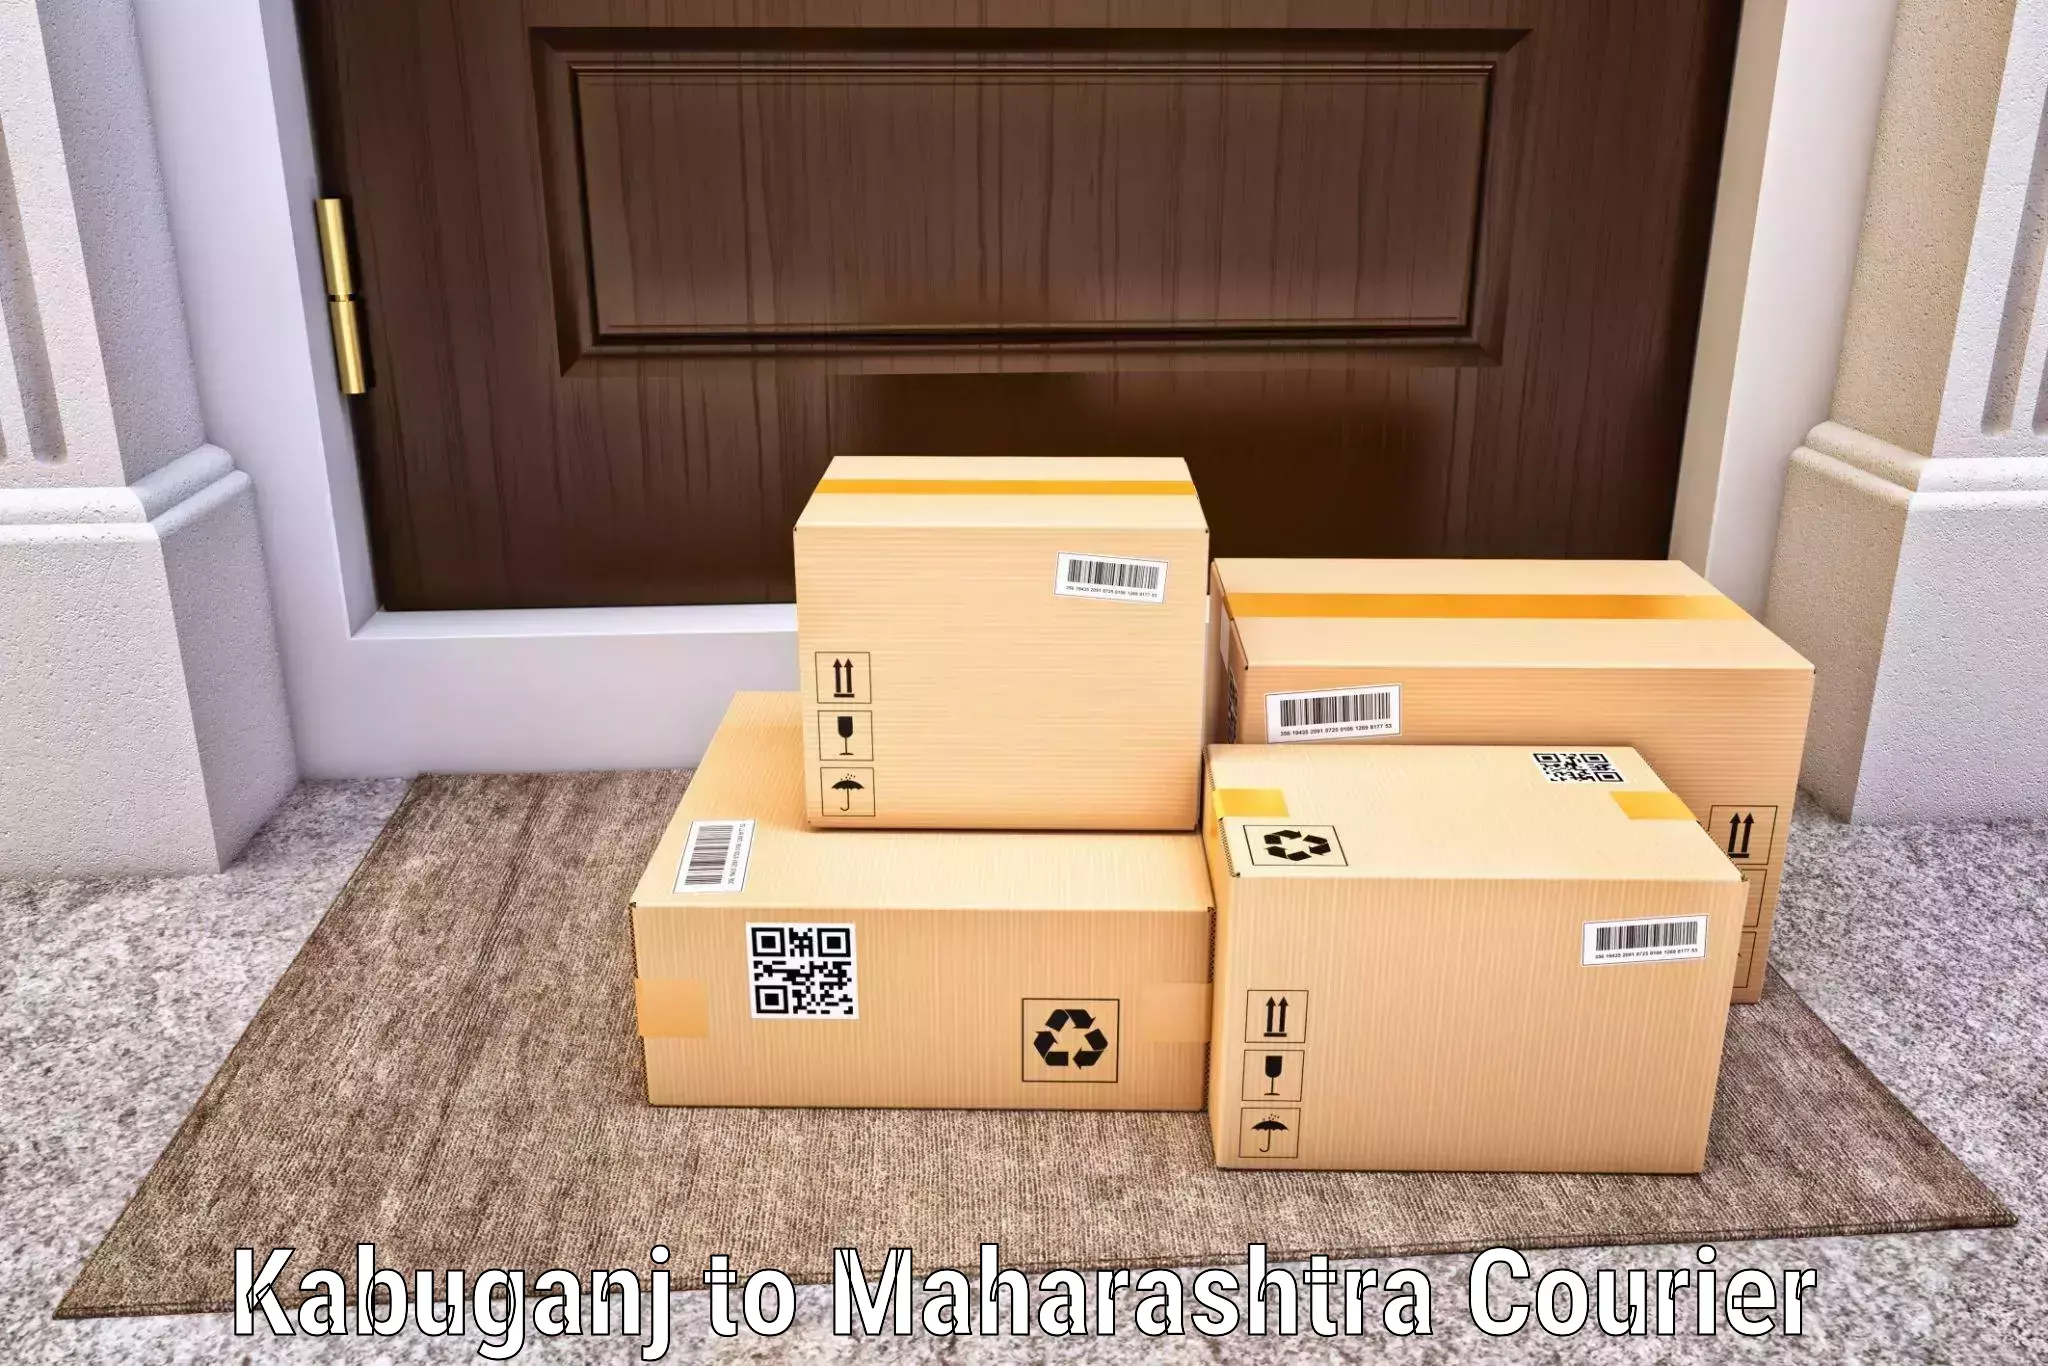 Doorstep delivery service in Kabuganj to Mangrulpir